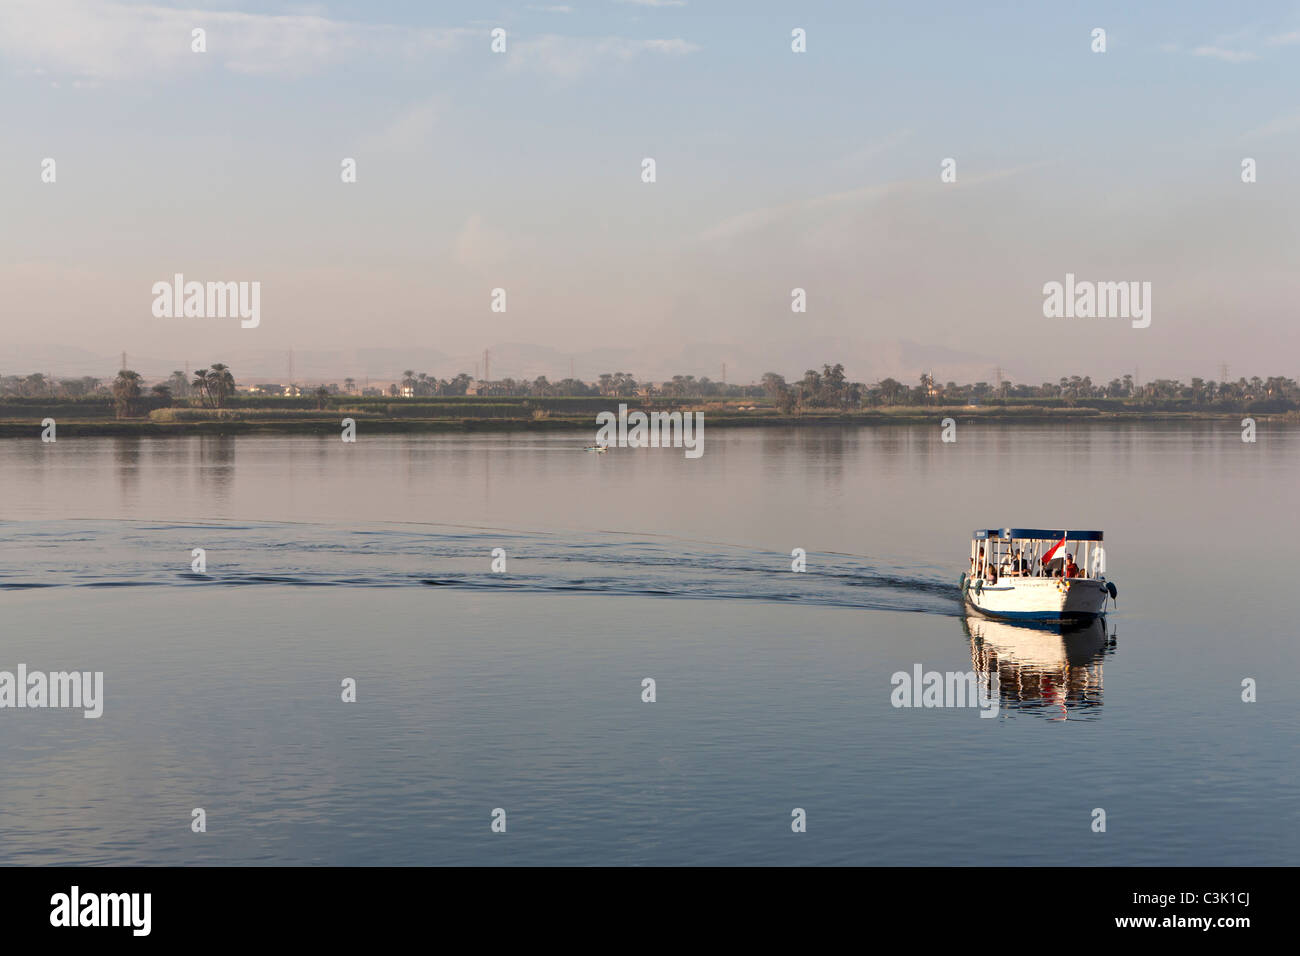 Ein Nil Wasser Taxi verlassen Gefolge, perfekt reflektiert, mit große Wasserfläche offen ruhig hinter Ägypten gebogen Stockfoto